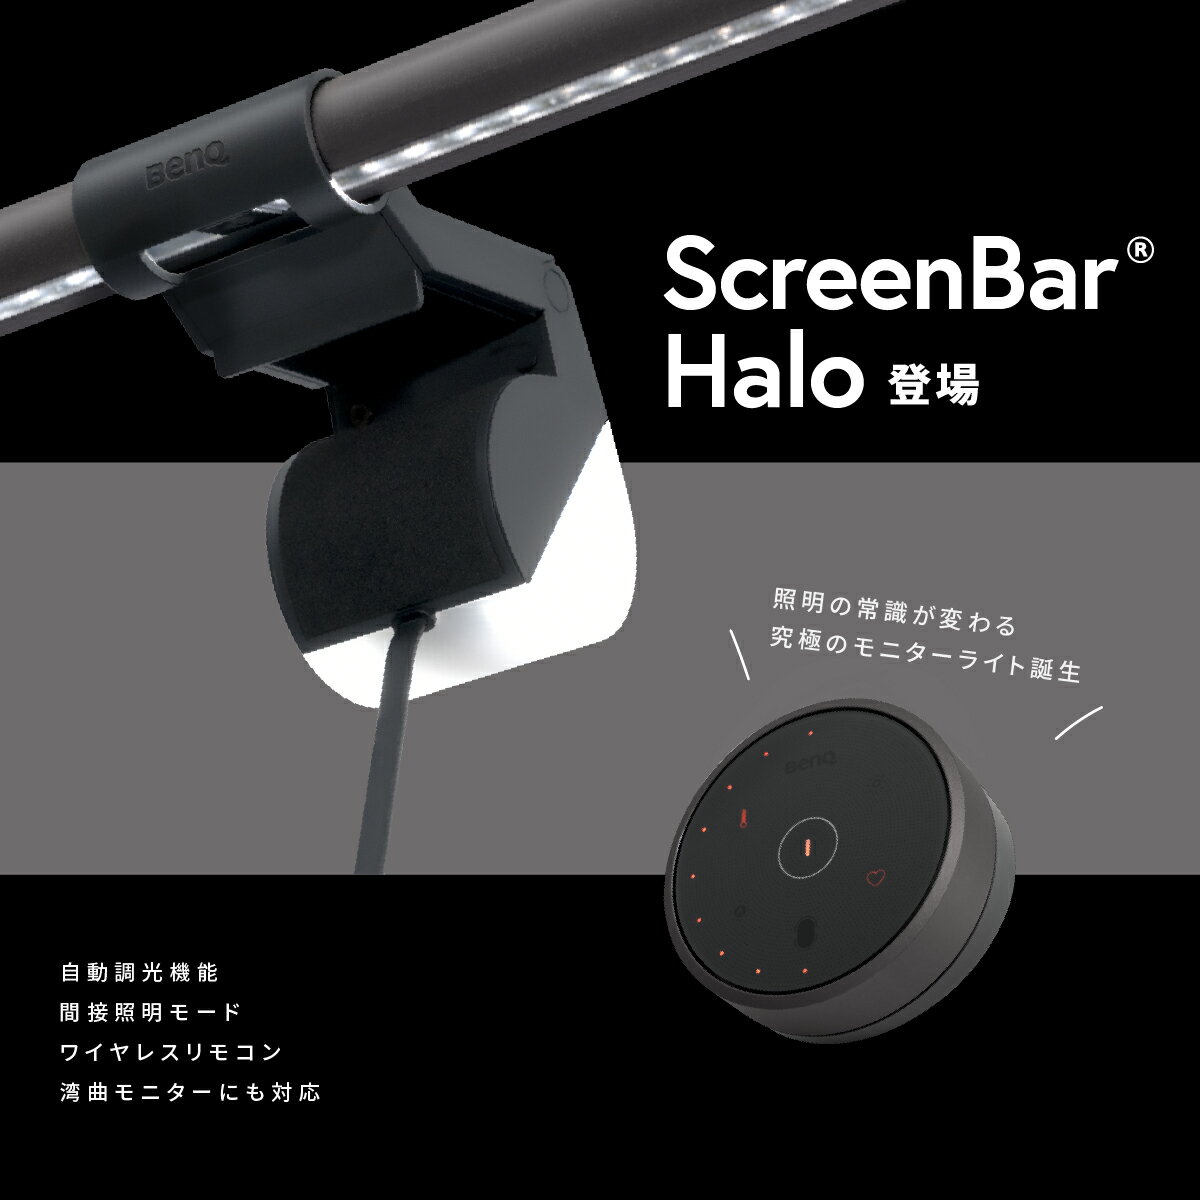 【BenQ公式店】BenQ ScreenBar Halo スクリーンバー ハロー モニターライト モニター掛け式ライト USBライト 自動調光 無線リモコン 間接照明モード 湾曲モニター 曲面ディスプレイ 対応 高演色性Ra95